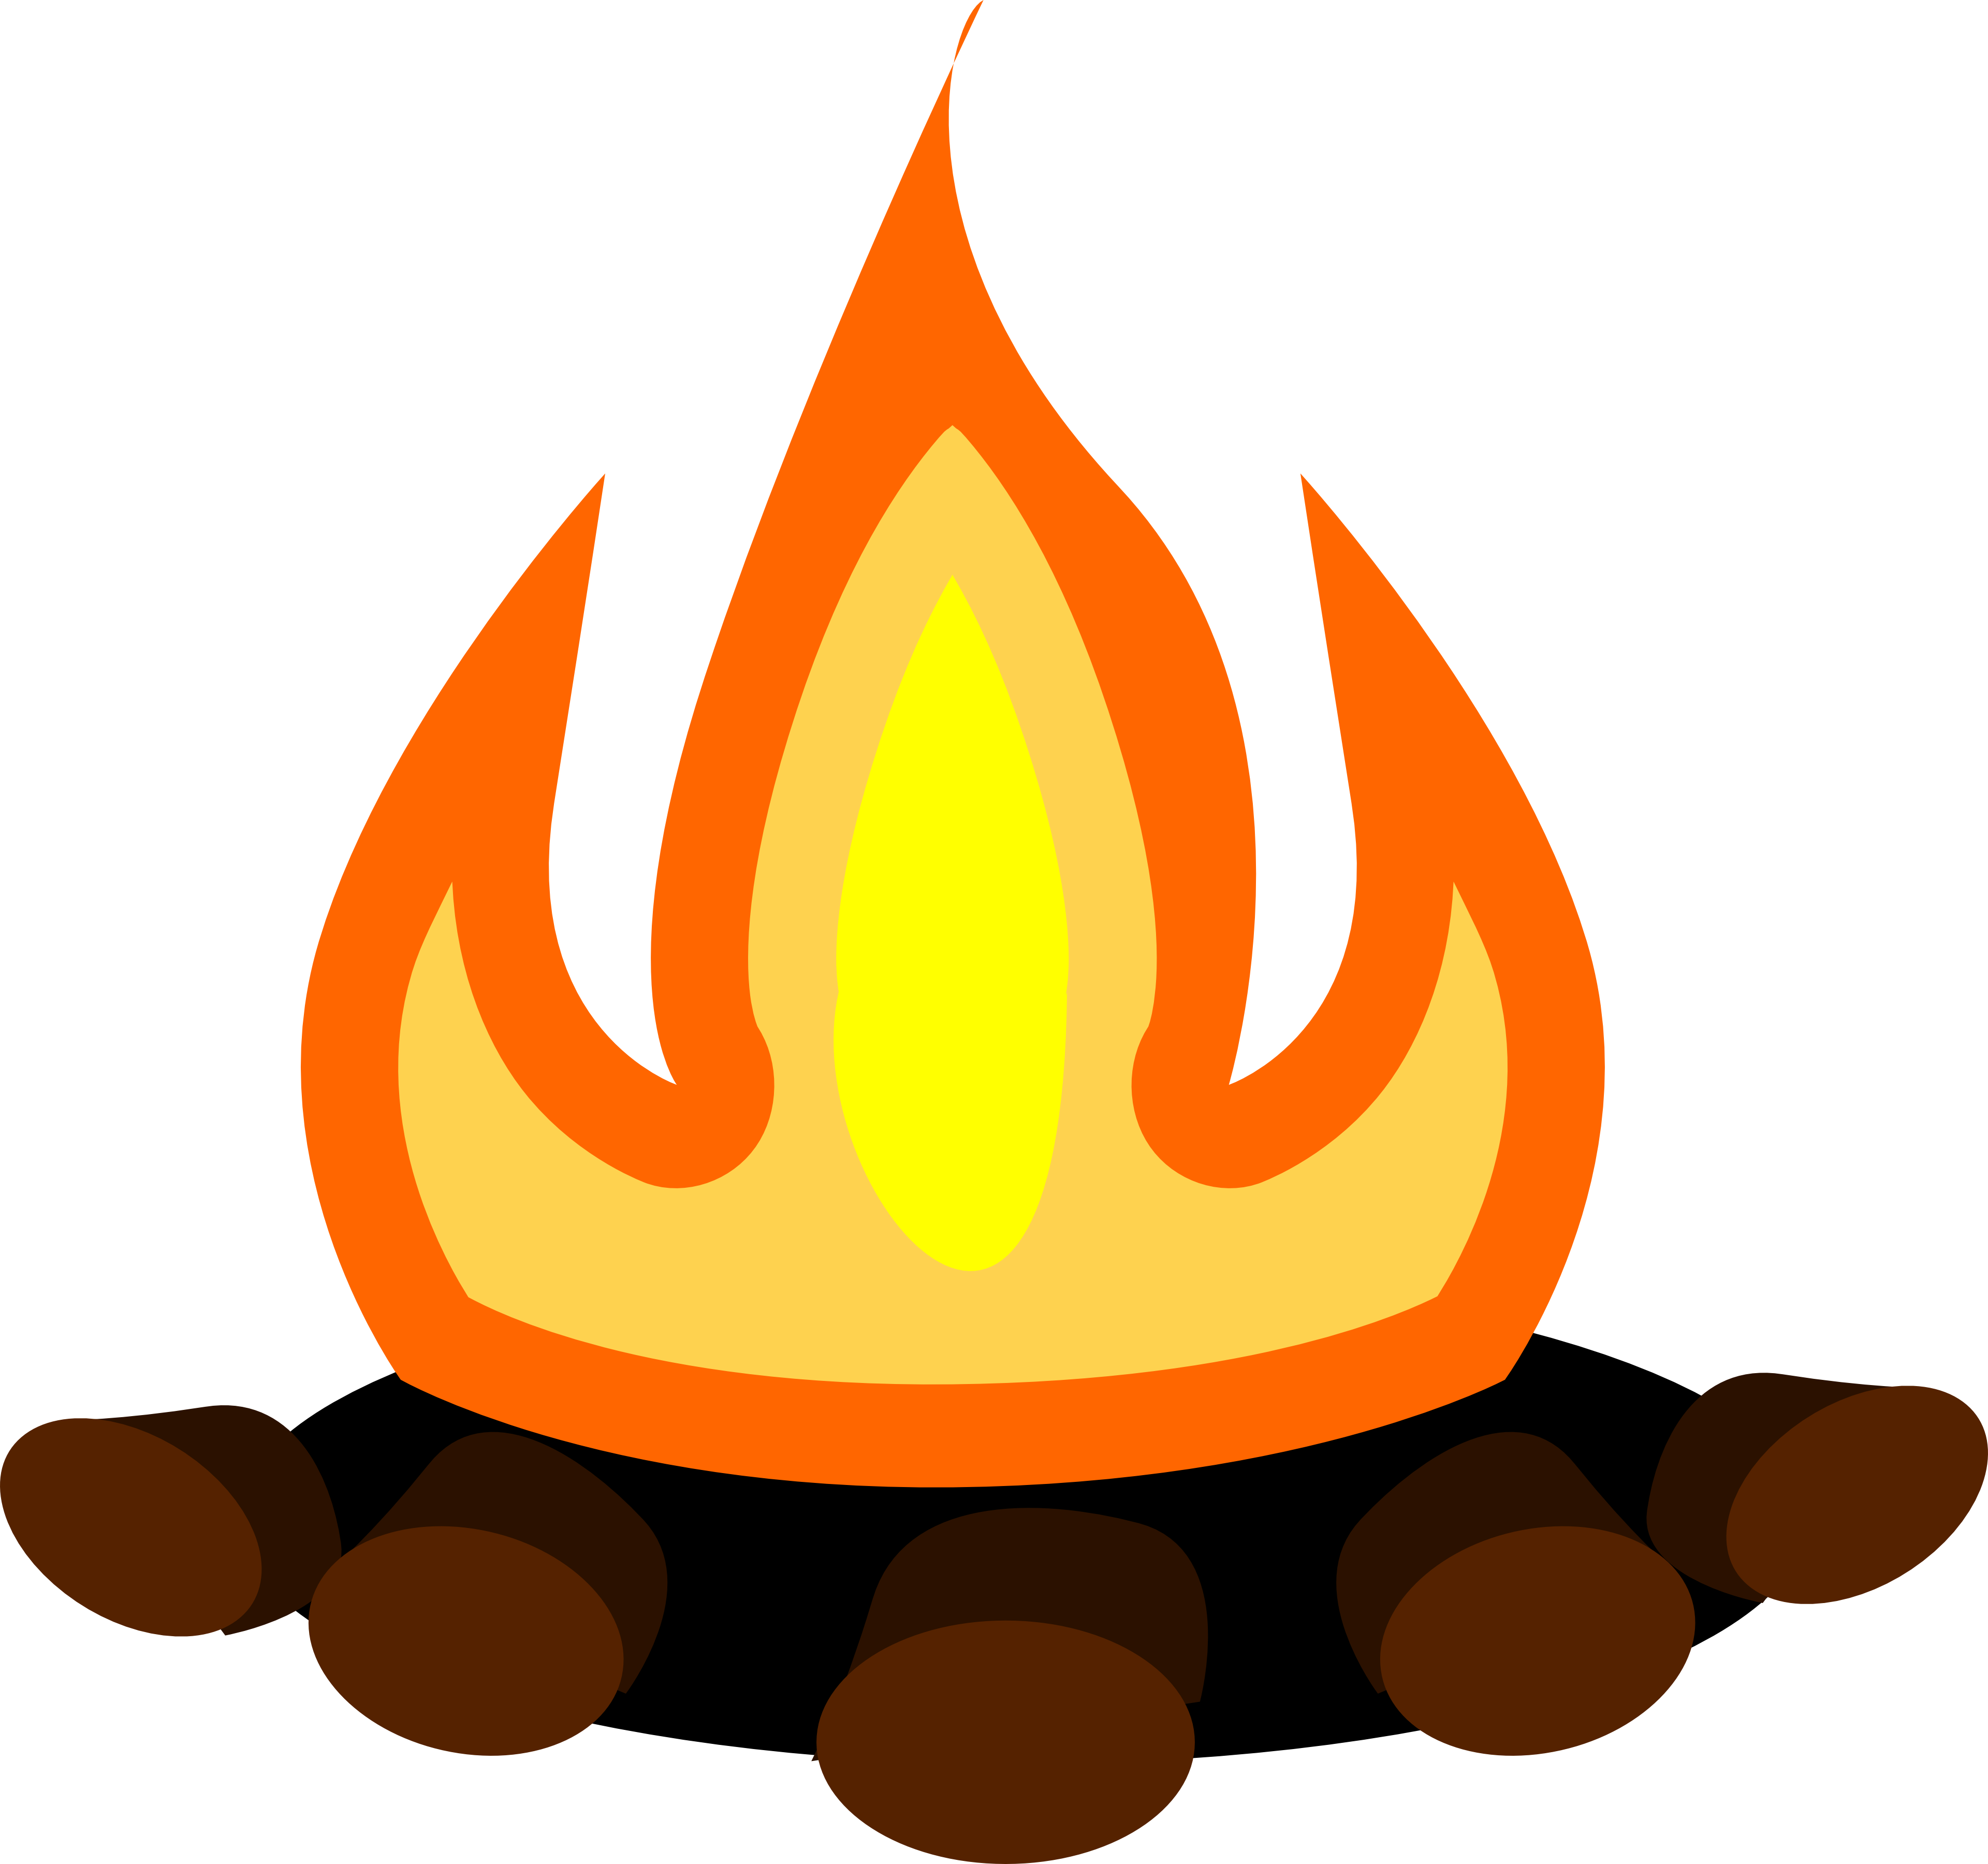 A Cartoon Of A Fire